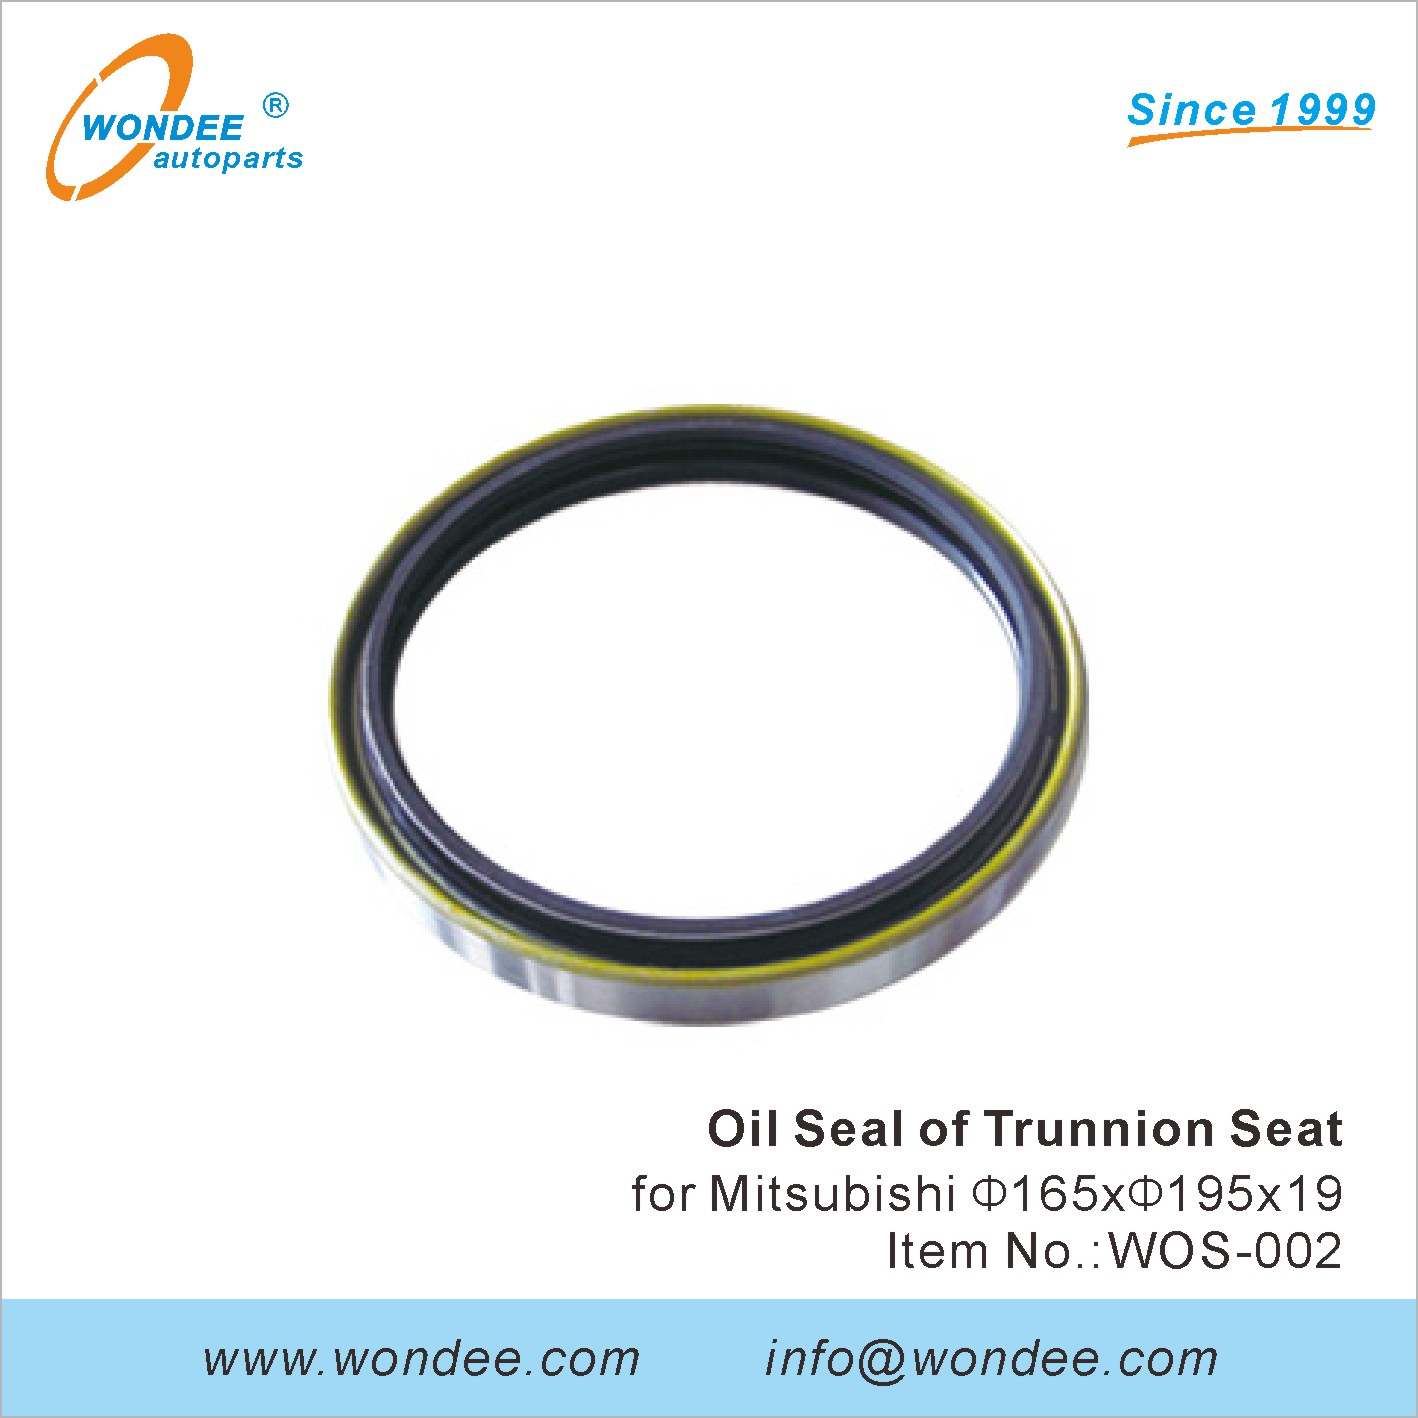 WONDEE oil seal of trunnion seat (2)